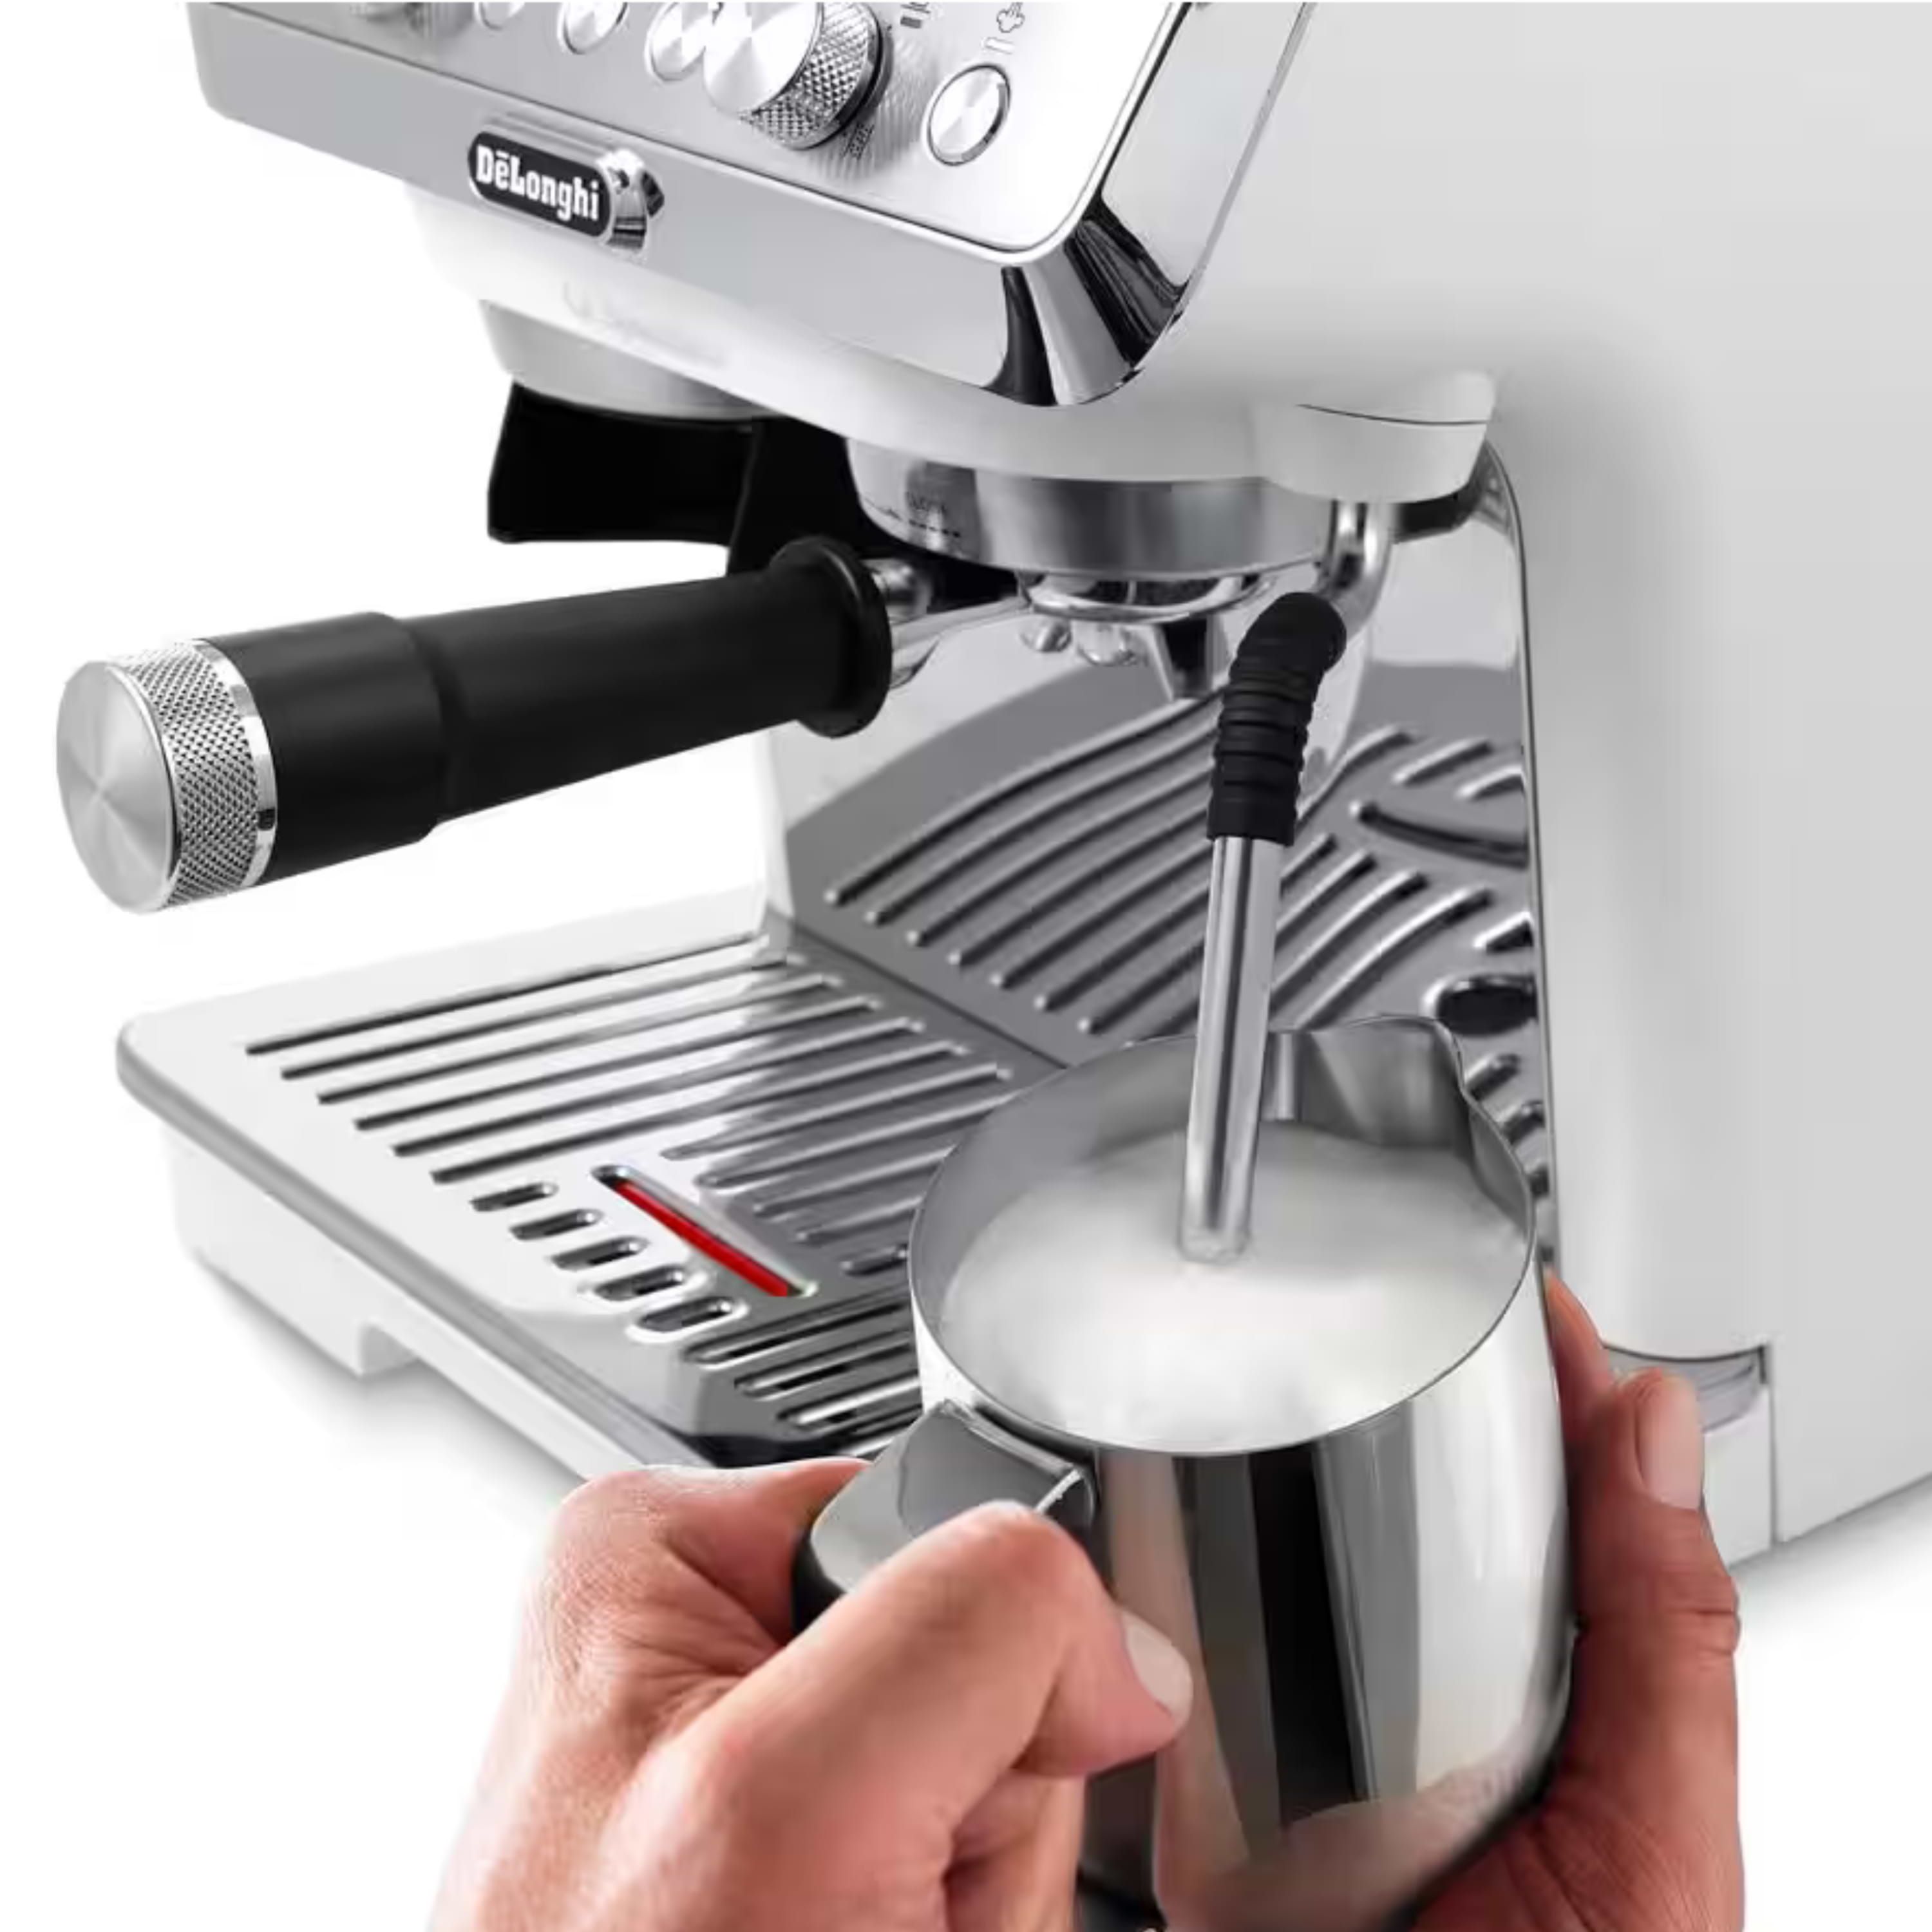 מכונת קפה ידנית DELONGI EC9155.W לבן